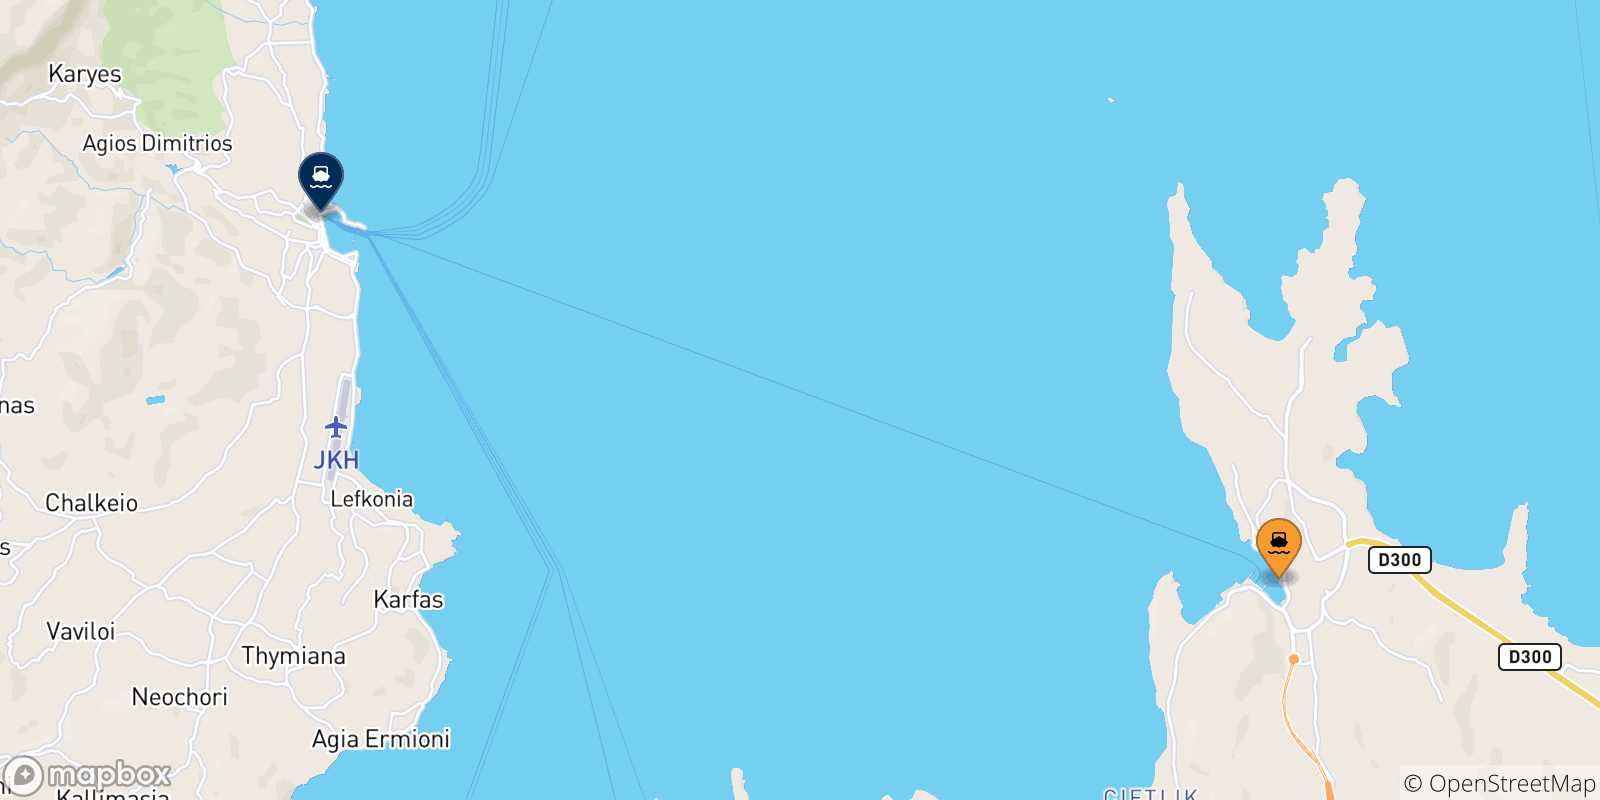 Carte des traversées possibles entre la Turquie et Chios